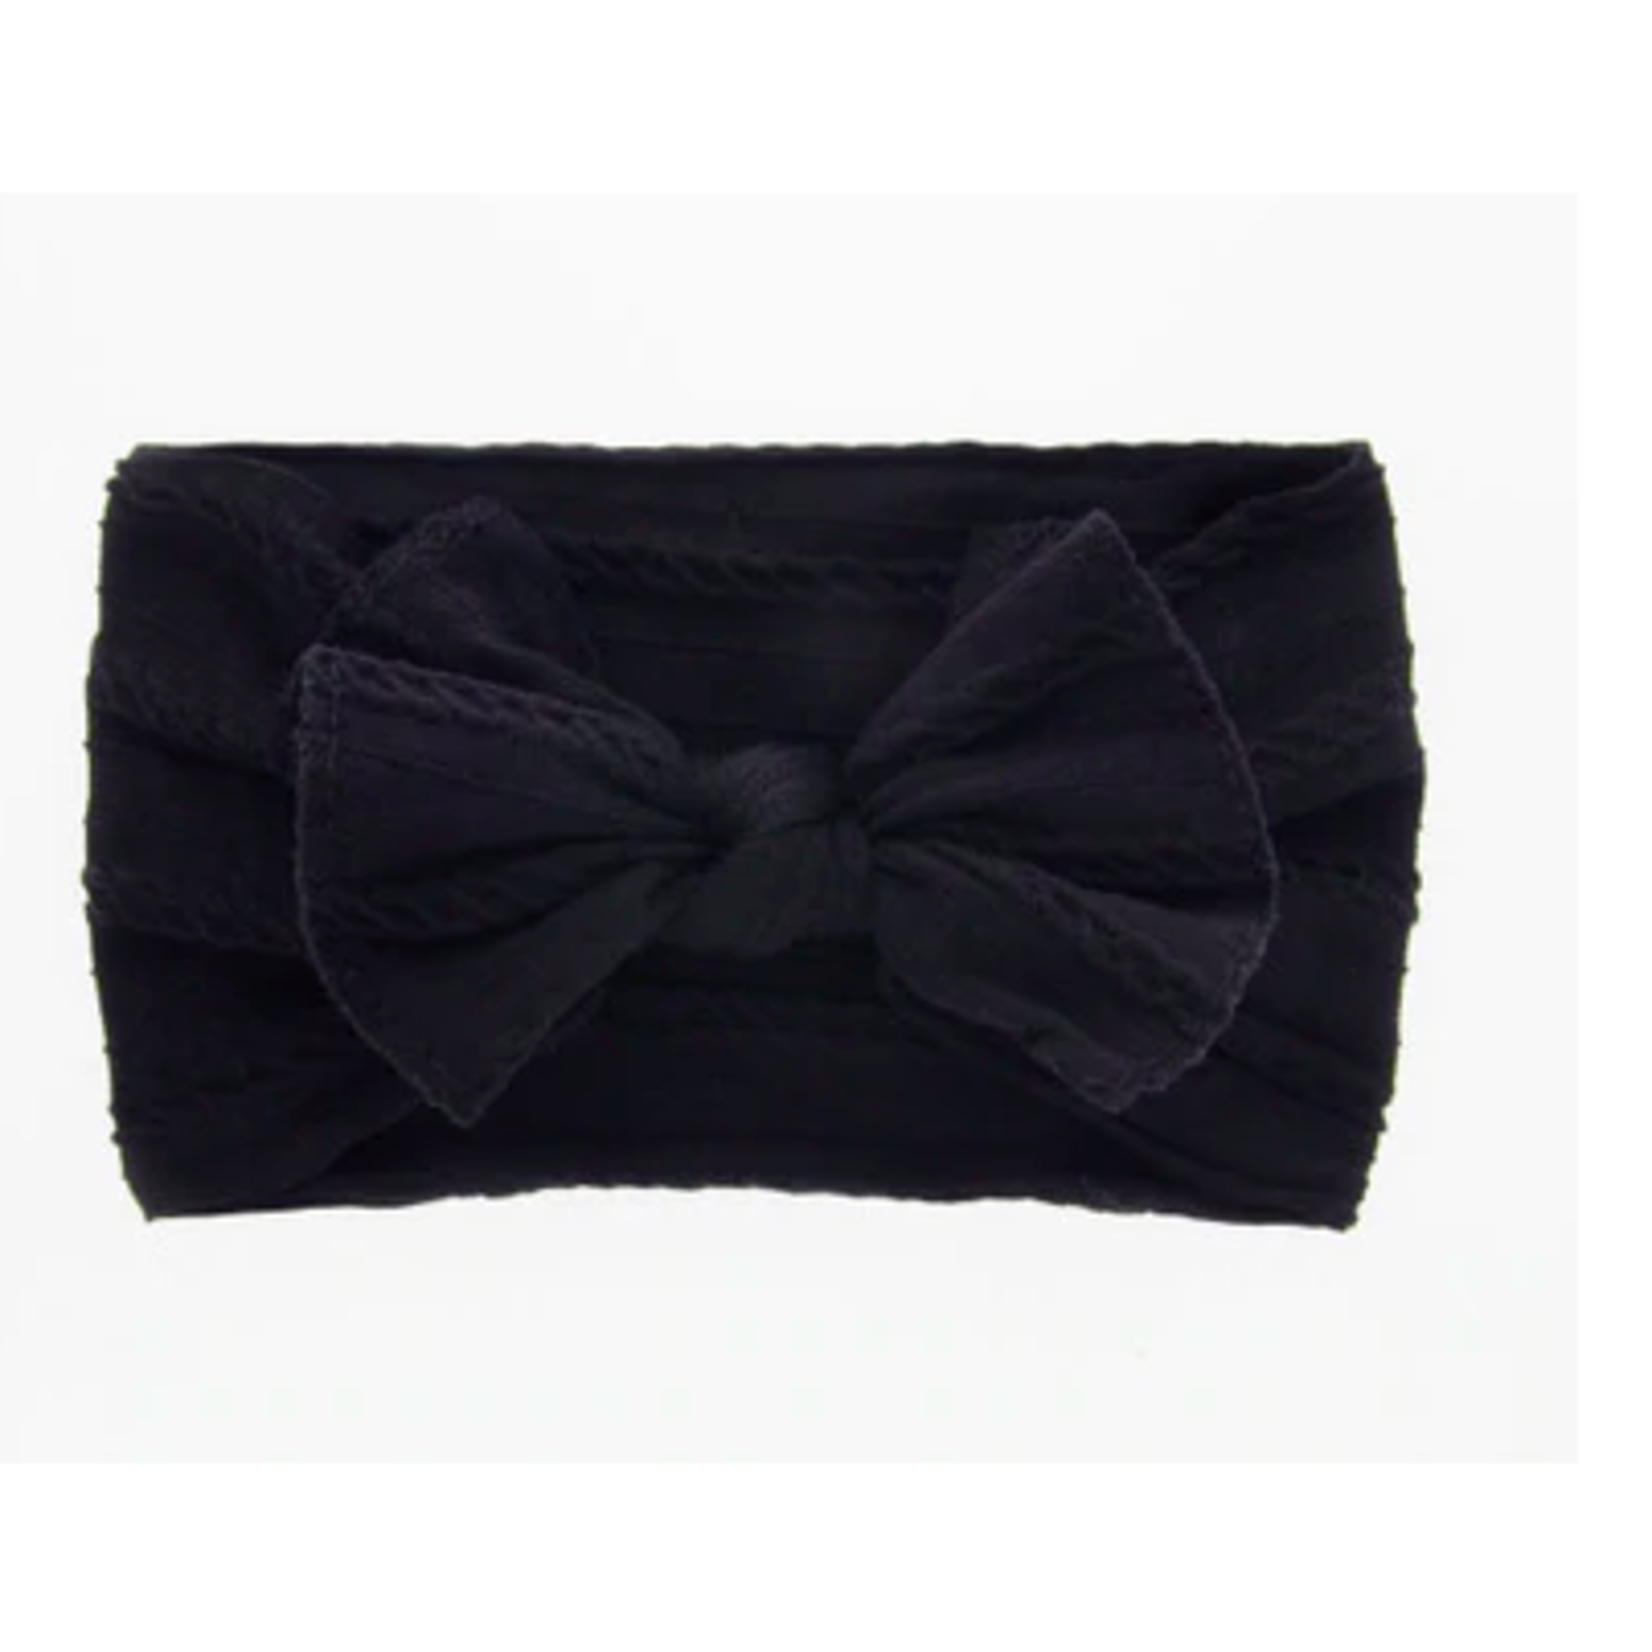 Siena Soft Bow headband - Black